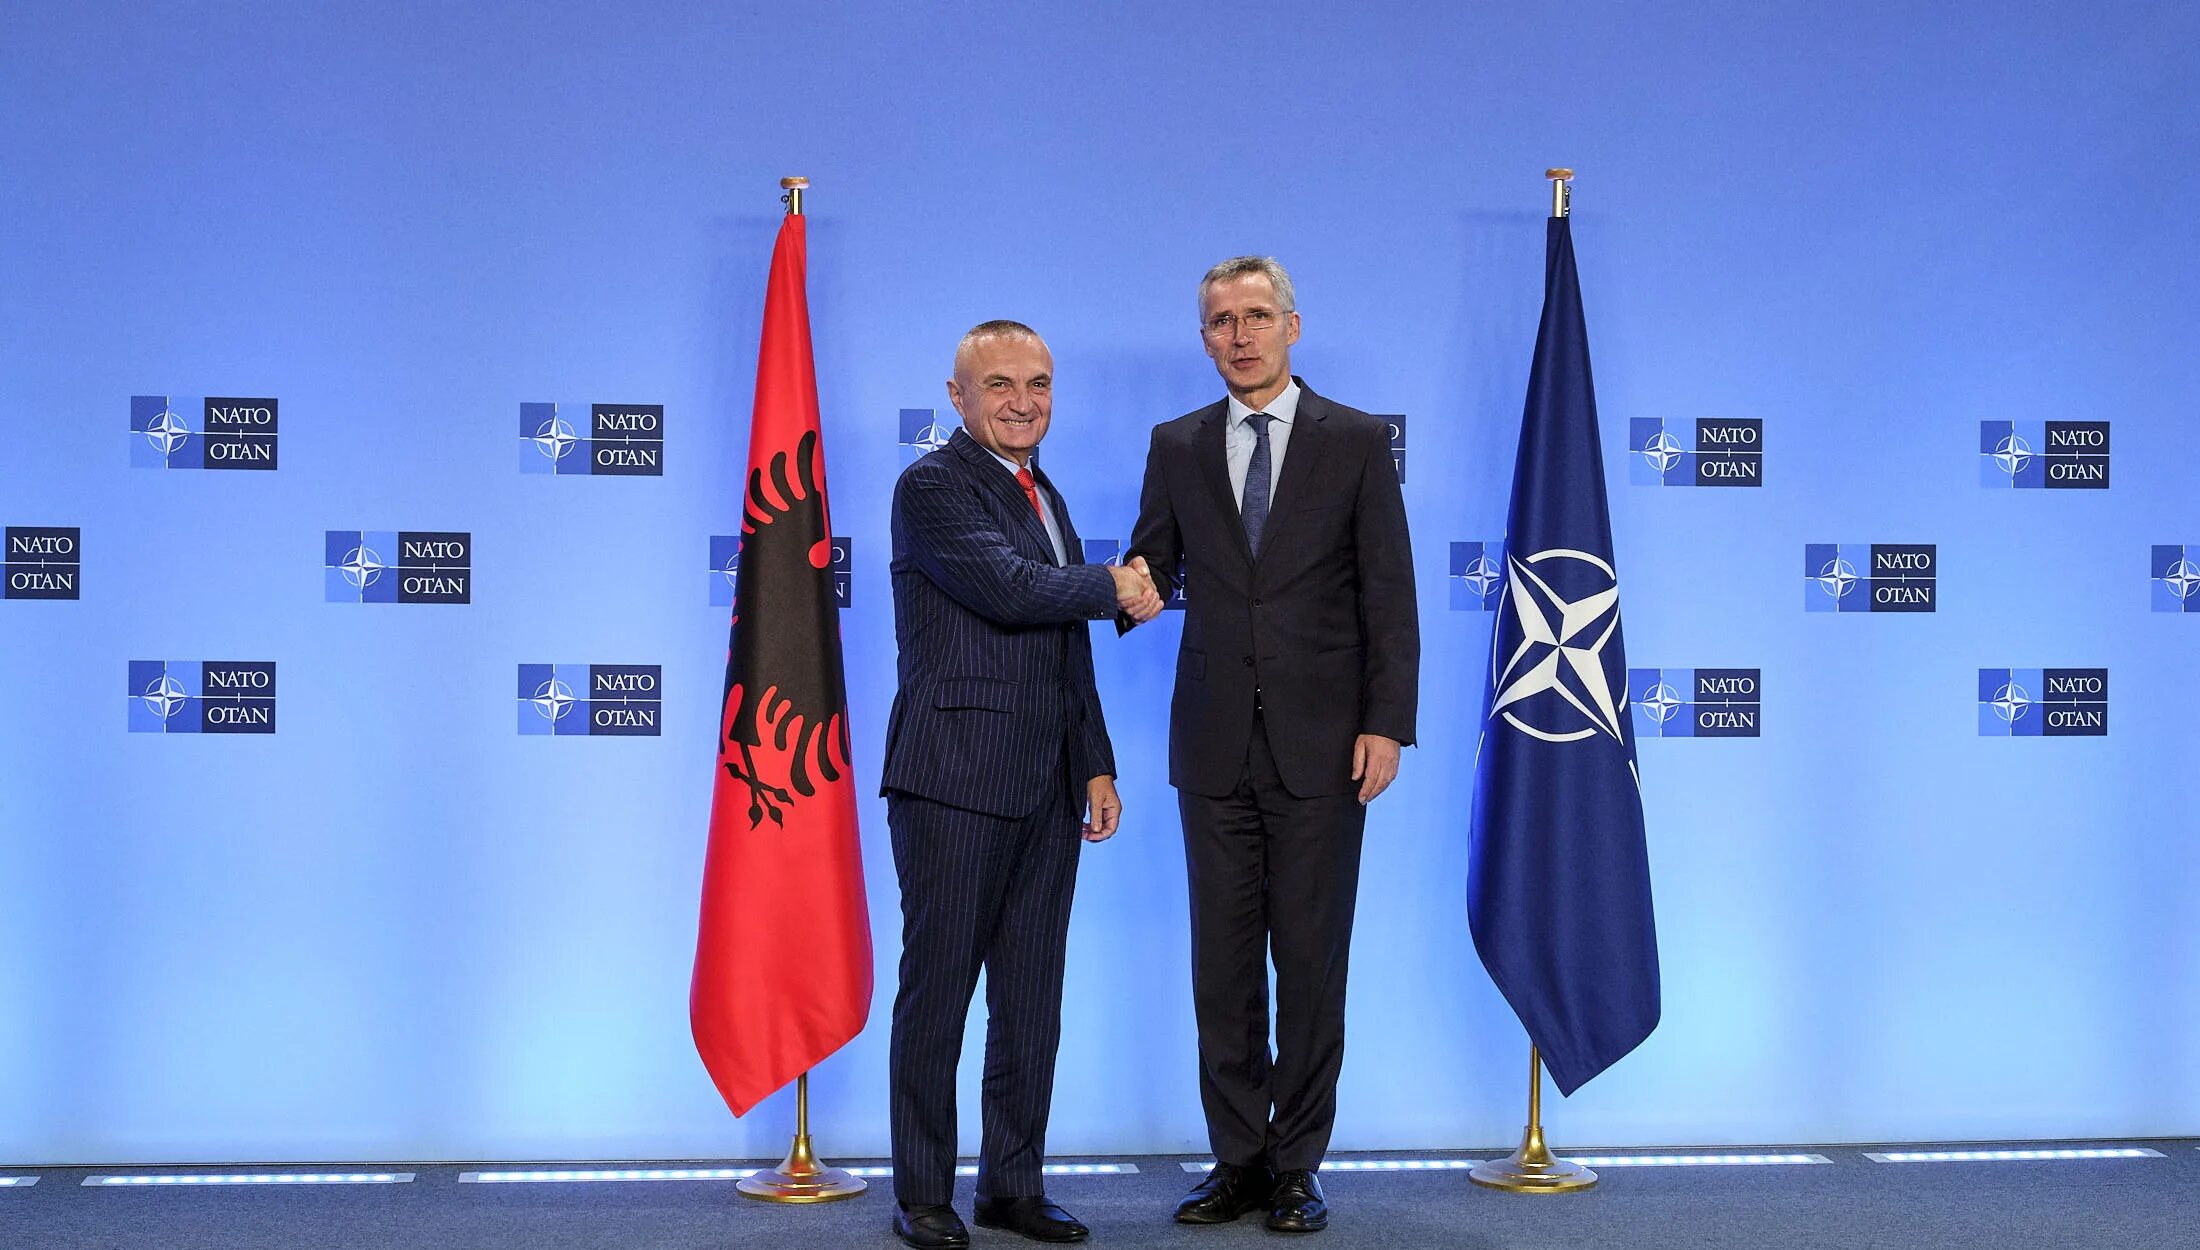 Португалия в нато. Илир МЕТА И Столтенберг. НАТО Отан. Вхождение в НАТО Албании и Хорватии.